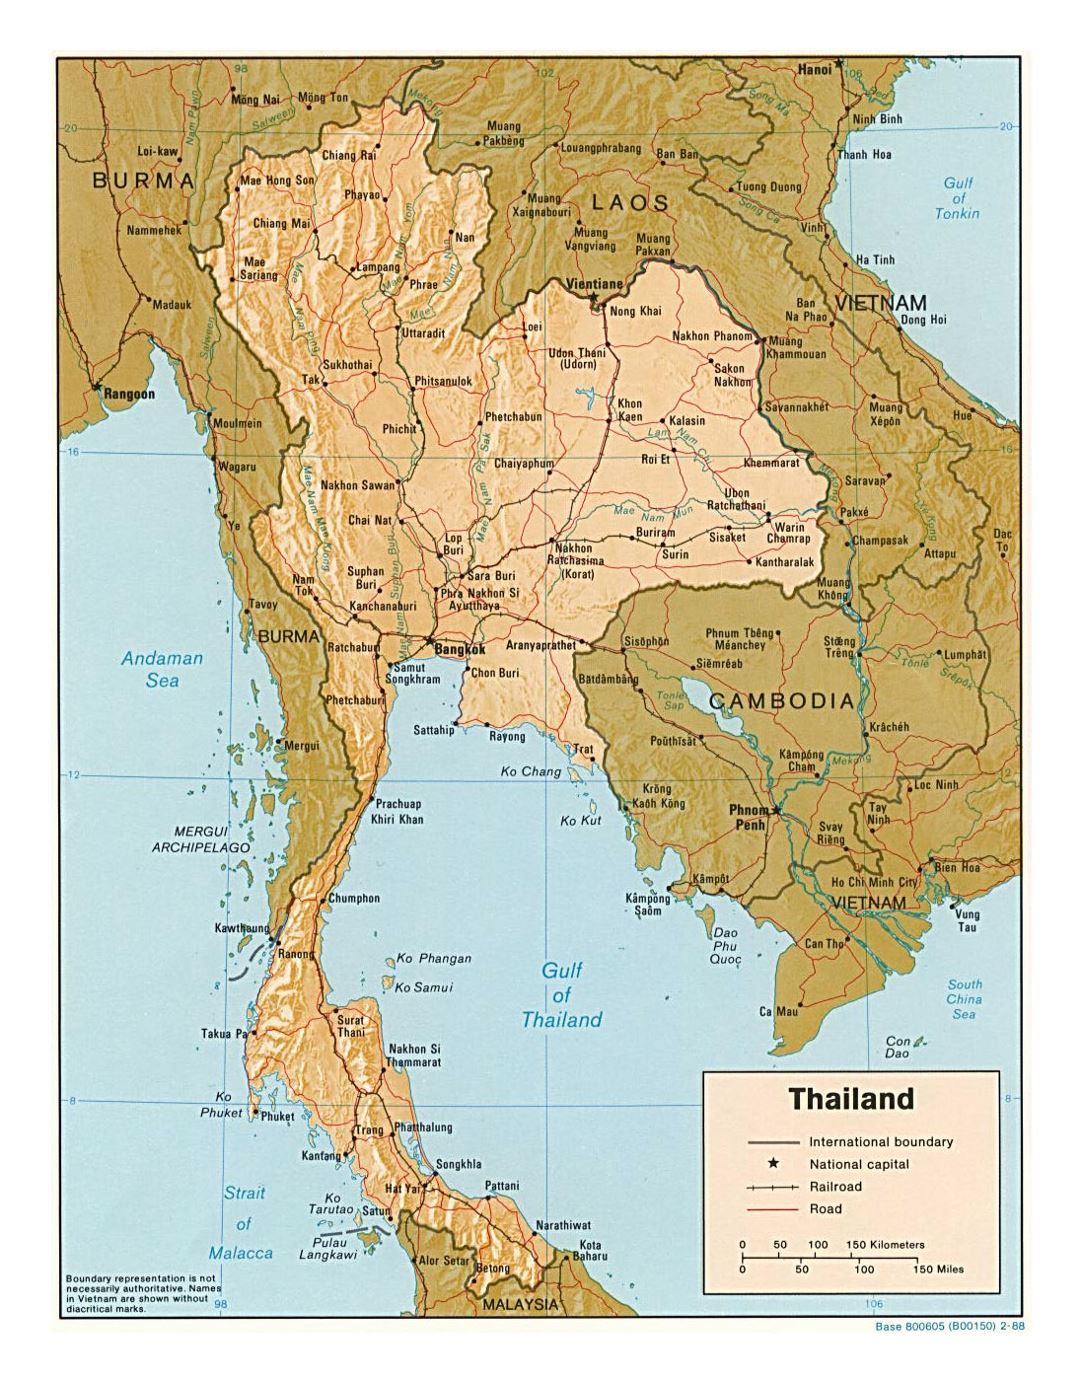 Detallado mapa político de Tailandia con relieve, carreteras, railorads y principales ciudades - 1988